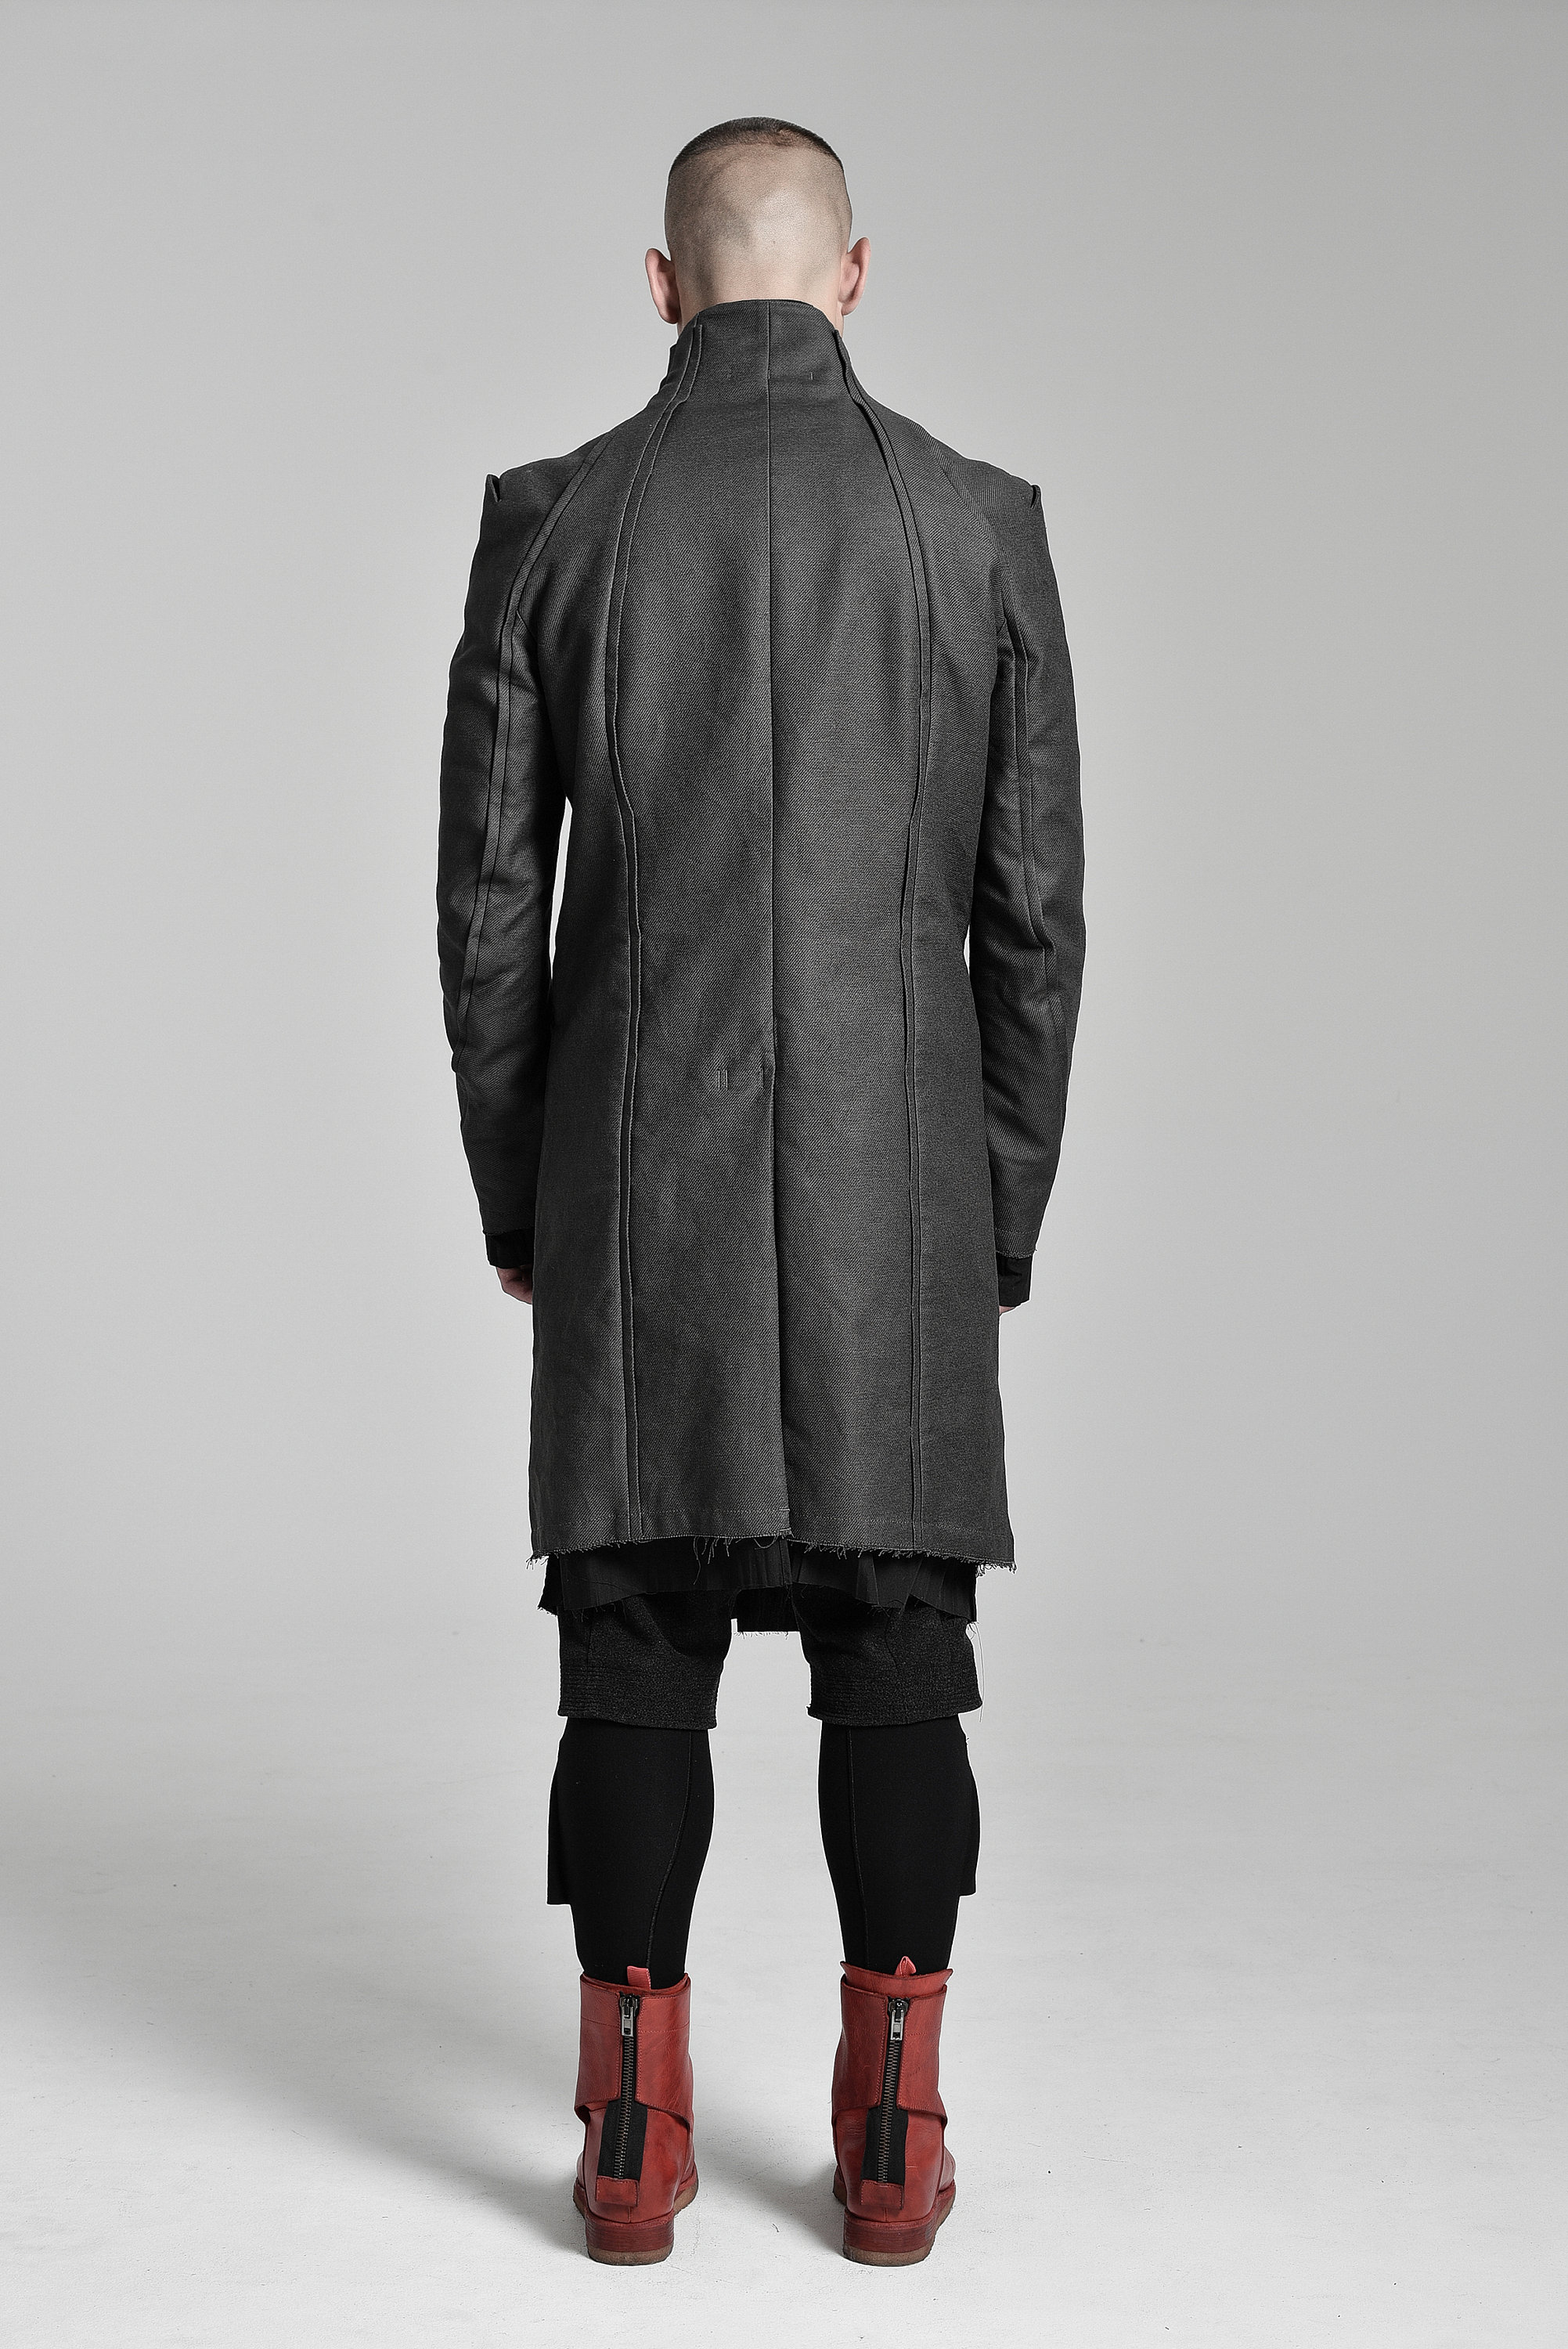 Futuristic Mens Coat / Slim Fit Coat / Cotton Mens Parka / | Etsy